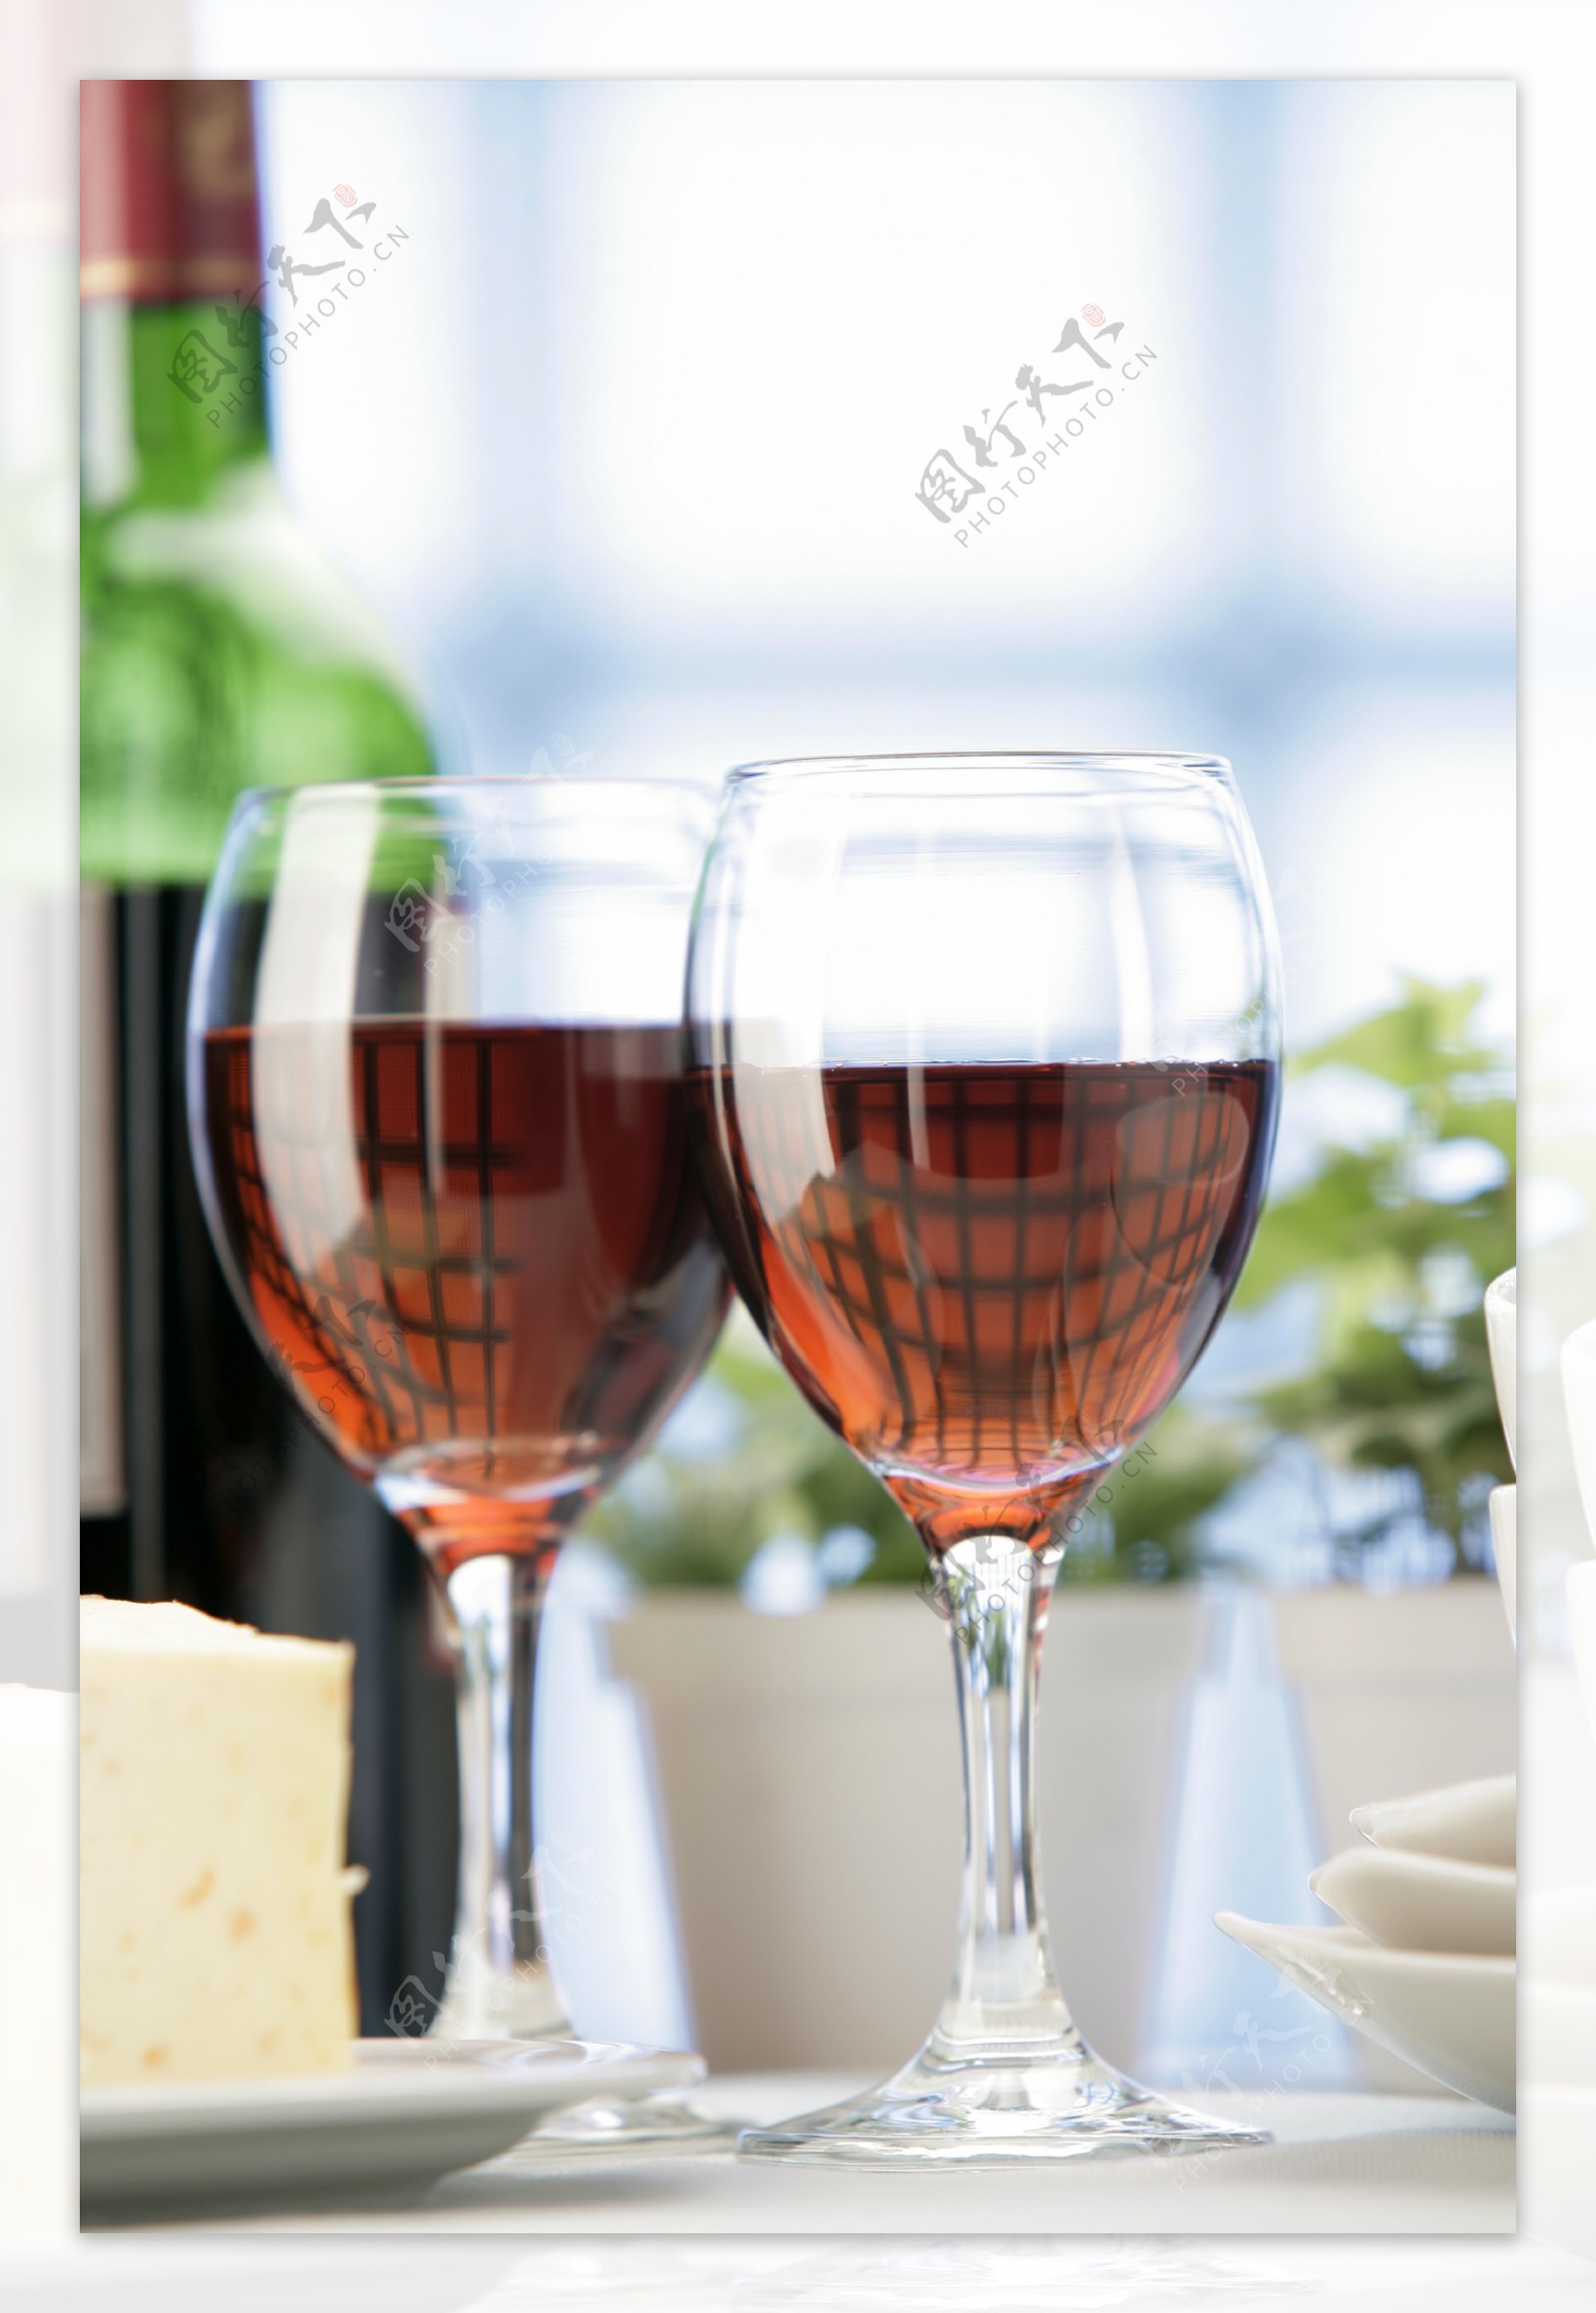 两杯经典红酒图片